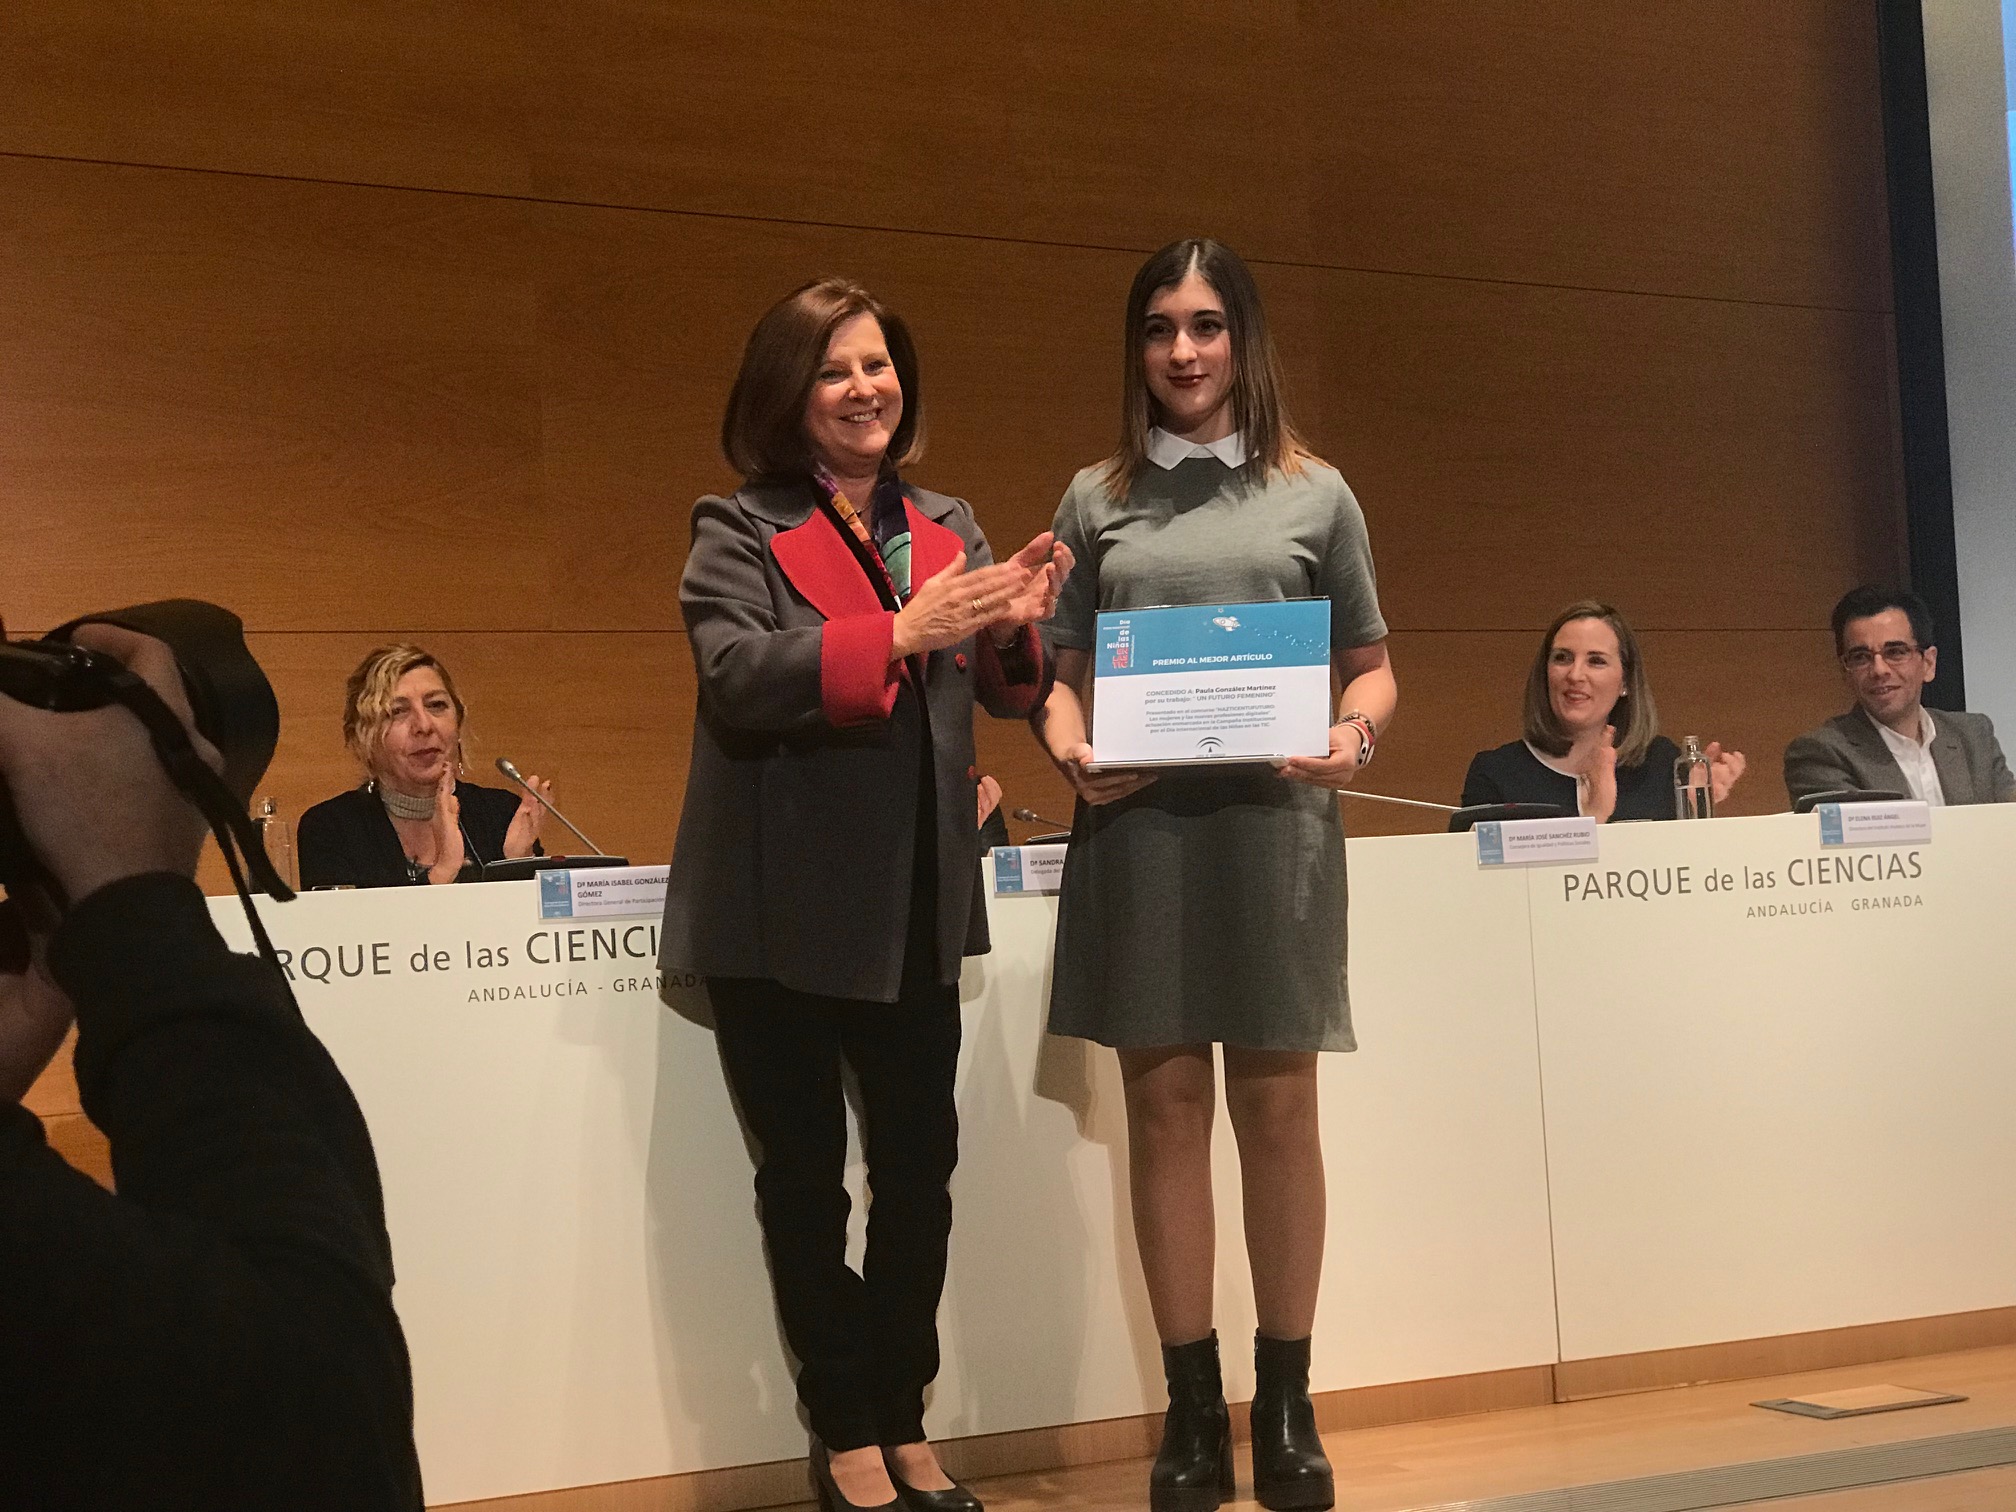 PAULA GONZÁLEZ, alumna del IES PEDRO JIMÉNEZ MONTOYA, obtiene el primer premio de Andalucía en el certamen HazTICenTuFuturo